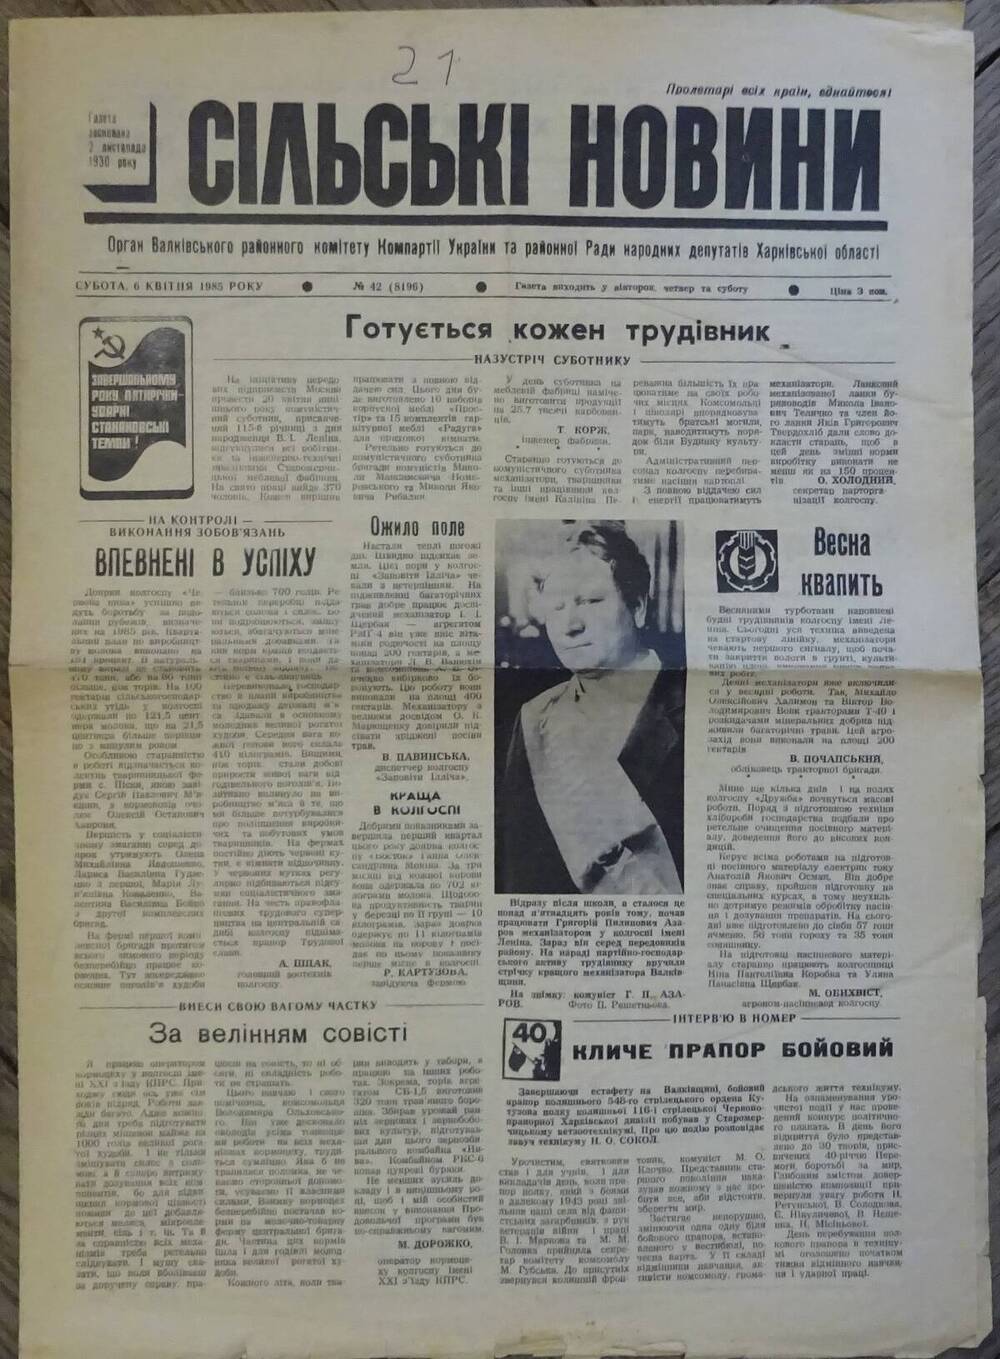 Газета «Сельские новости» от 06.04.1985 г. со статьей «Долина мужества и печали».